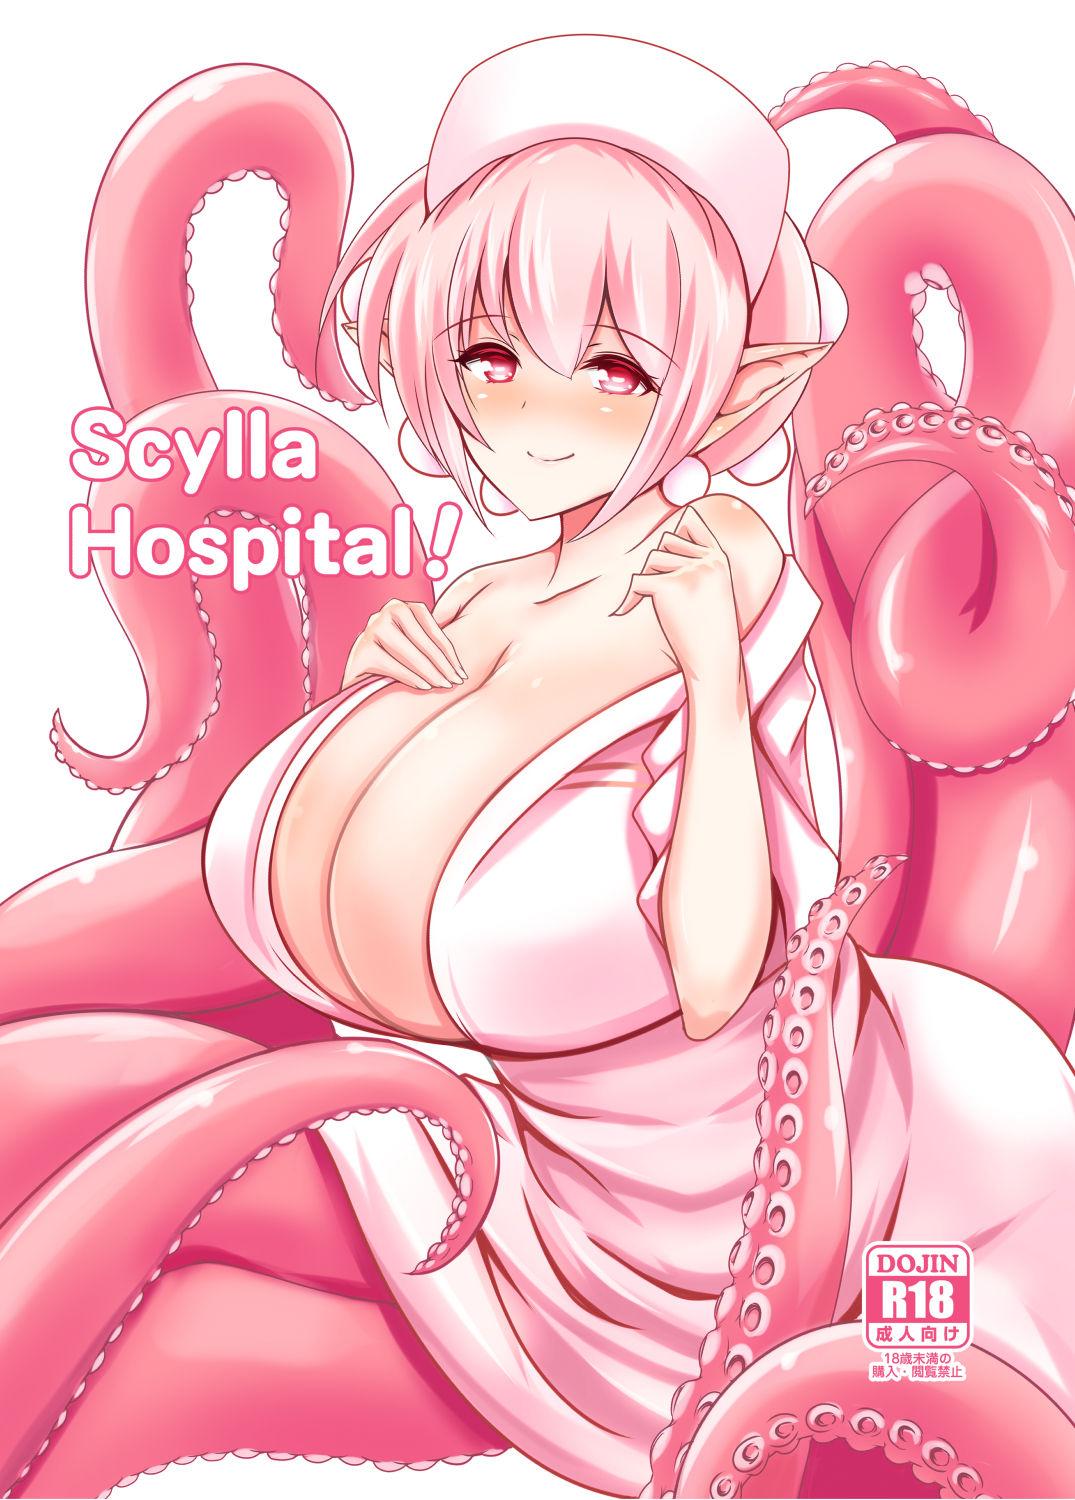 Footjob Scylla Hospital! - Original Sextoys - Picture 1